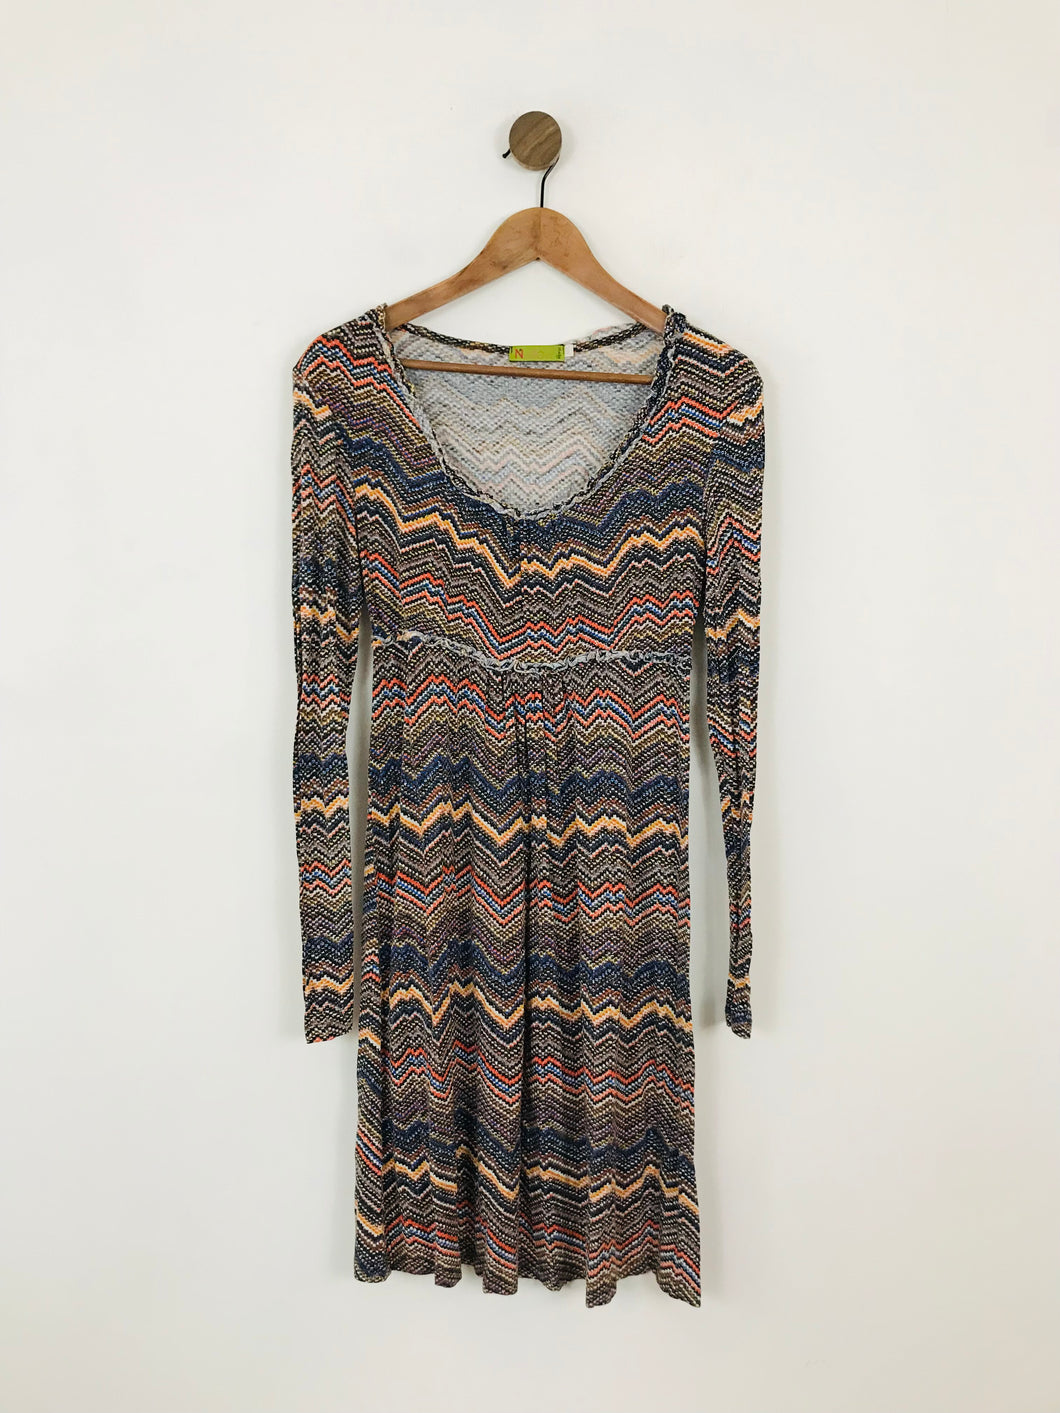 N&Willow Women's Long Sleeve Jersey Shirt Dress | M UK10-12 | Multicolour